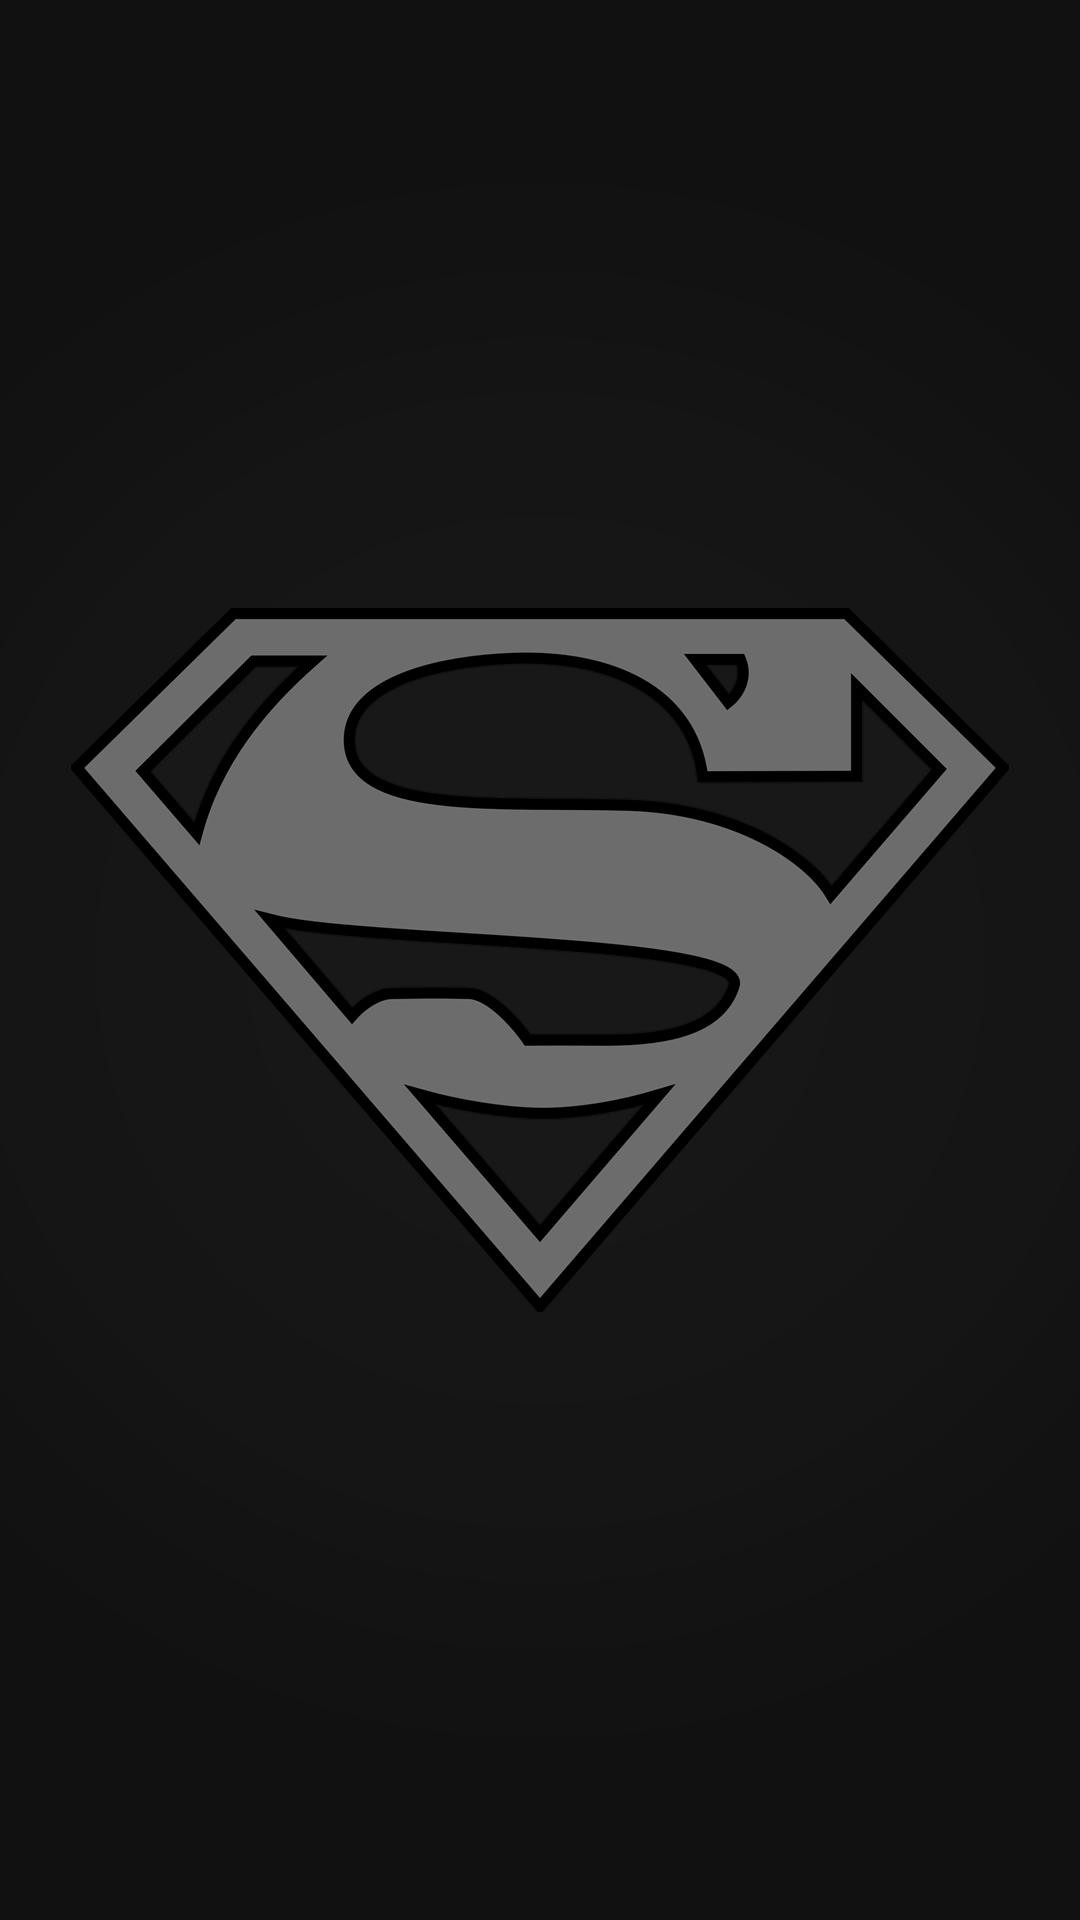 superman fondo de pantalla para iphone,superhombre,personaje de ficción,liga de la justicia,superhéroe,fuente